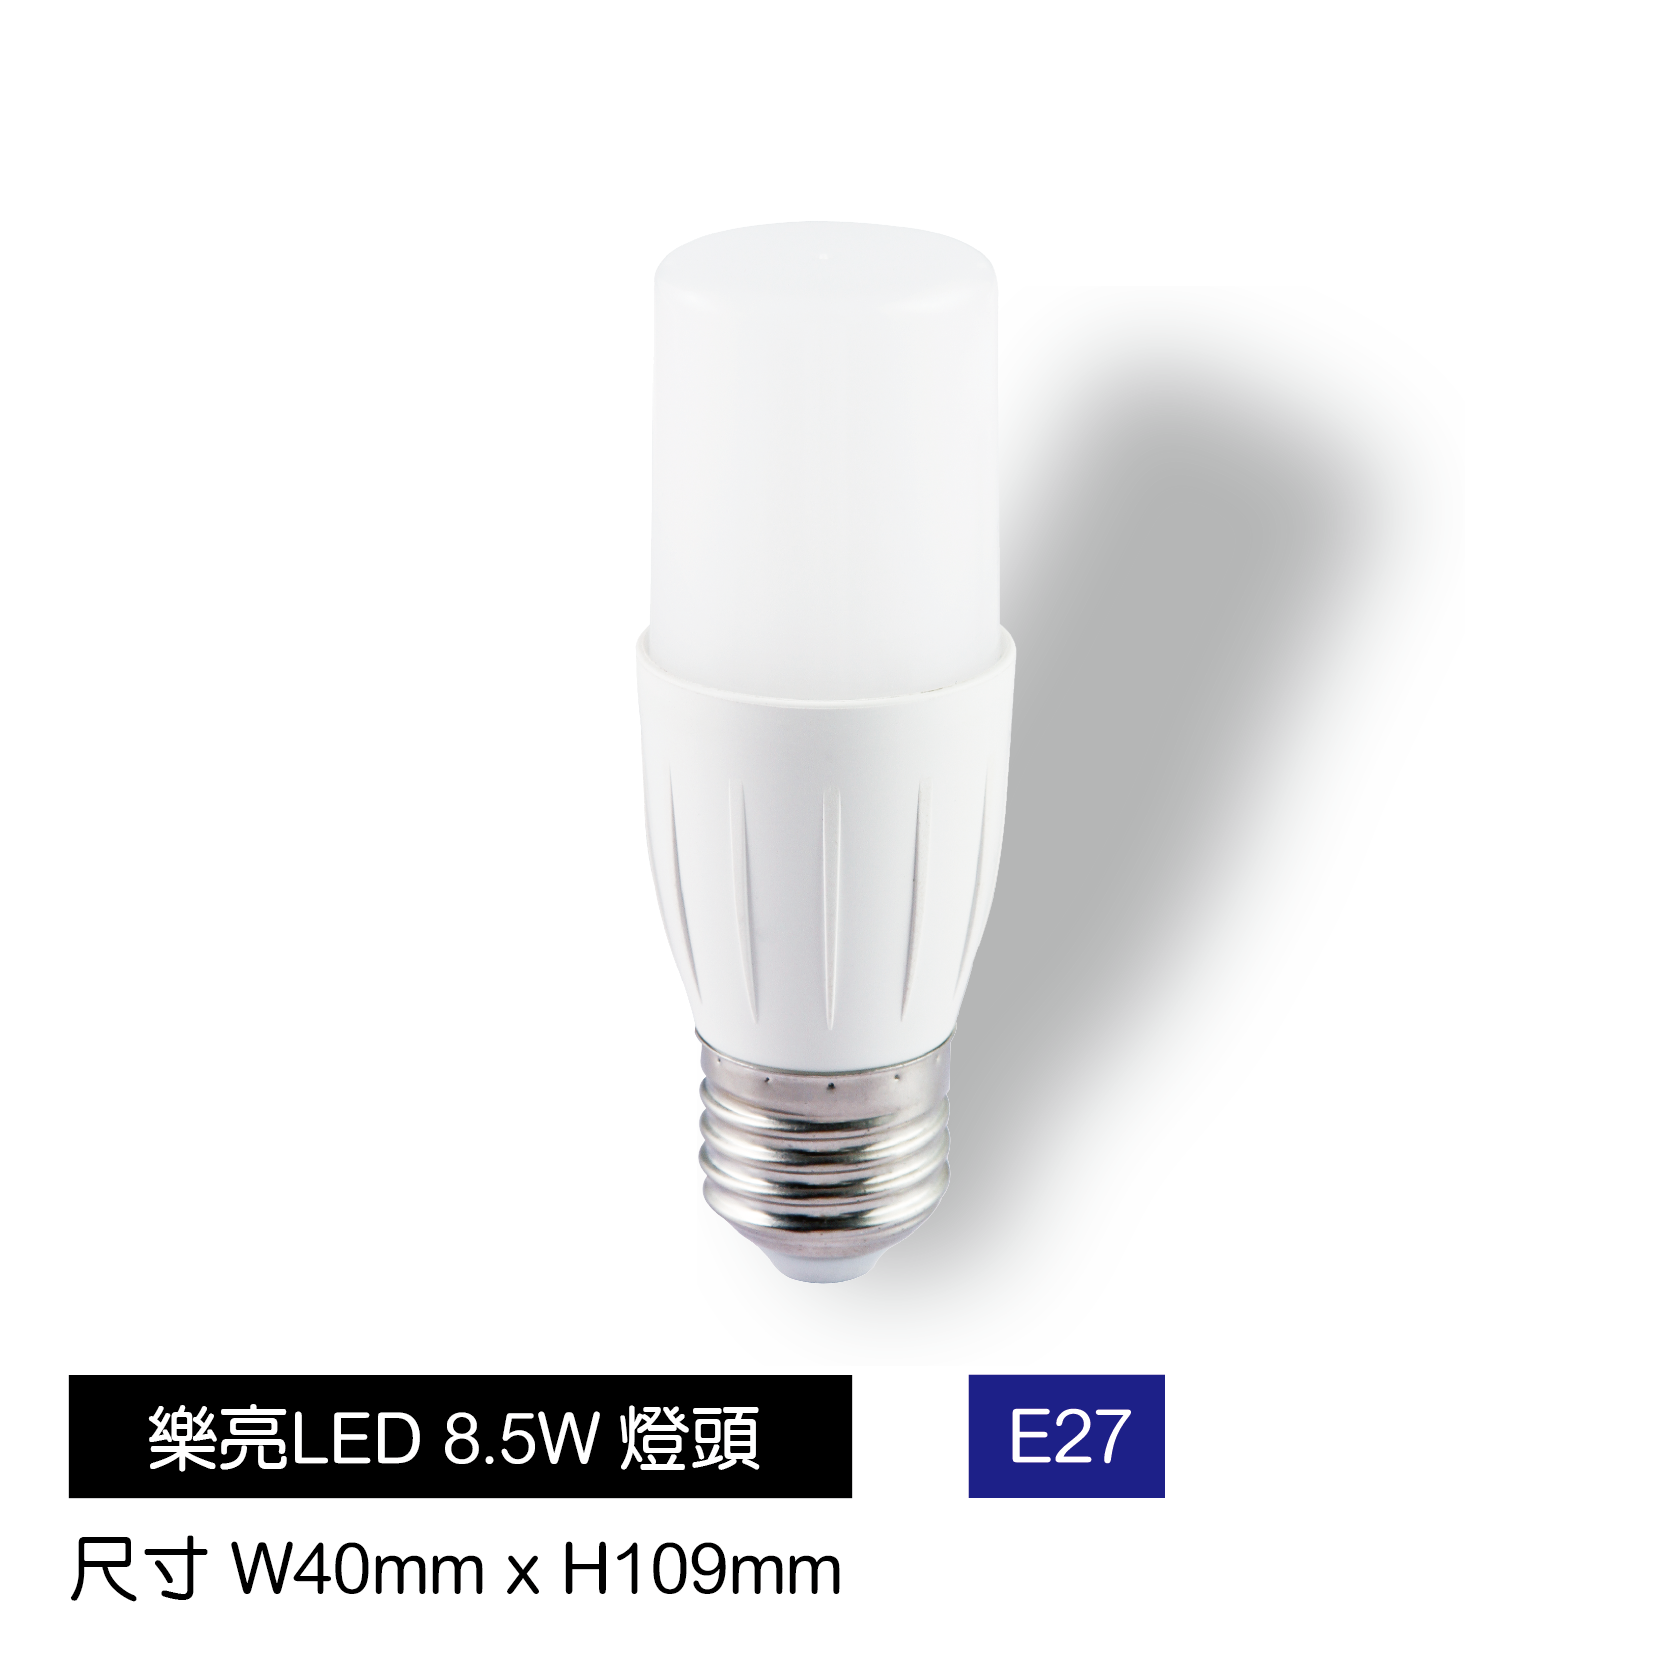 LED-8.5W小冰兵燈泡-E27